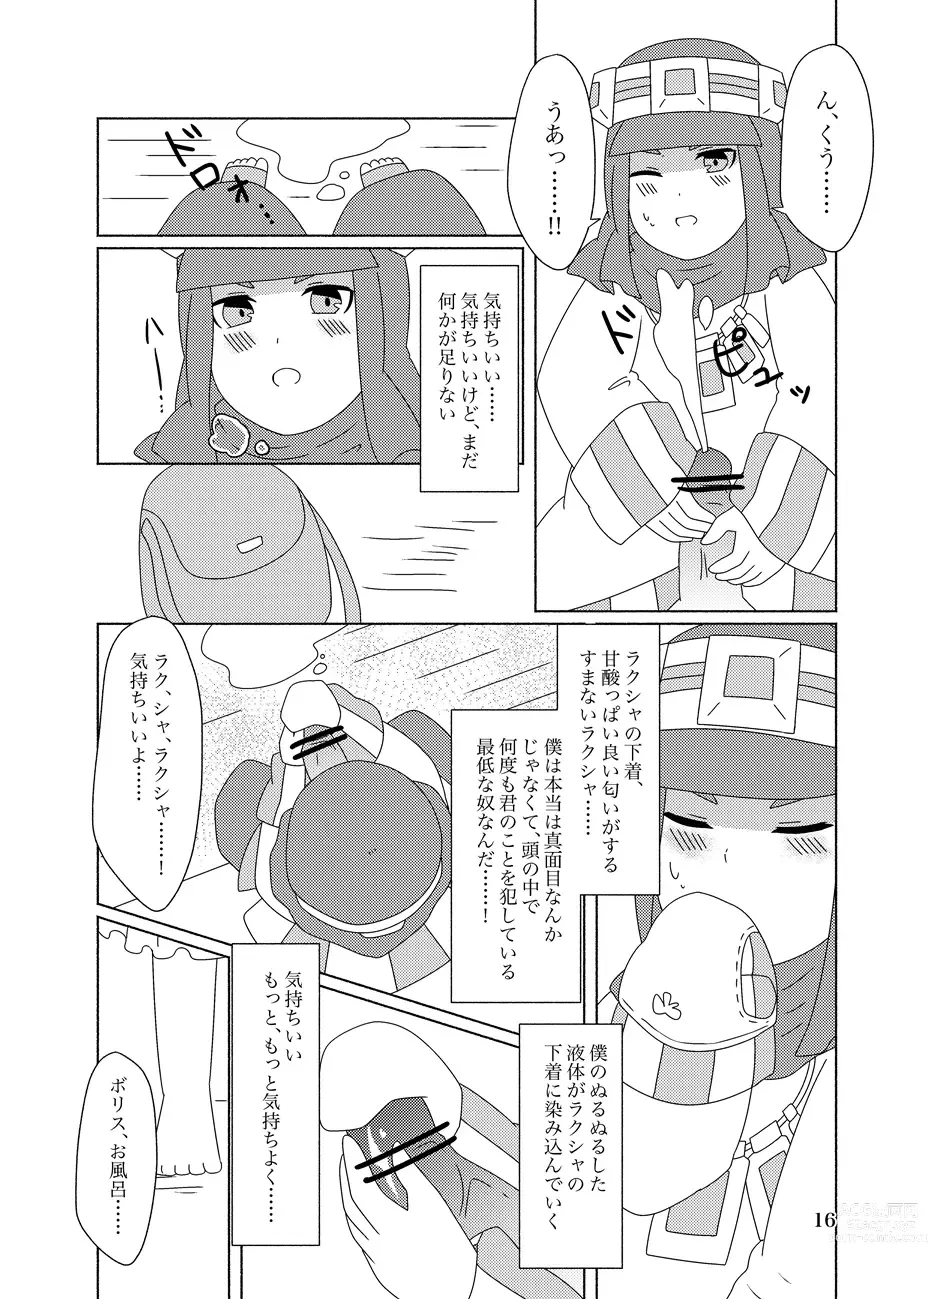 Page 16 of doujinshi Hachimitsu Sake to Milk